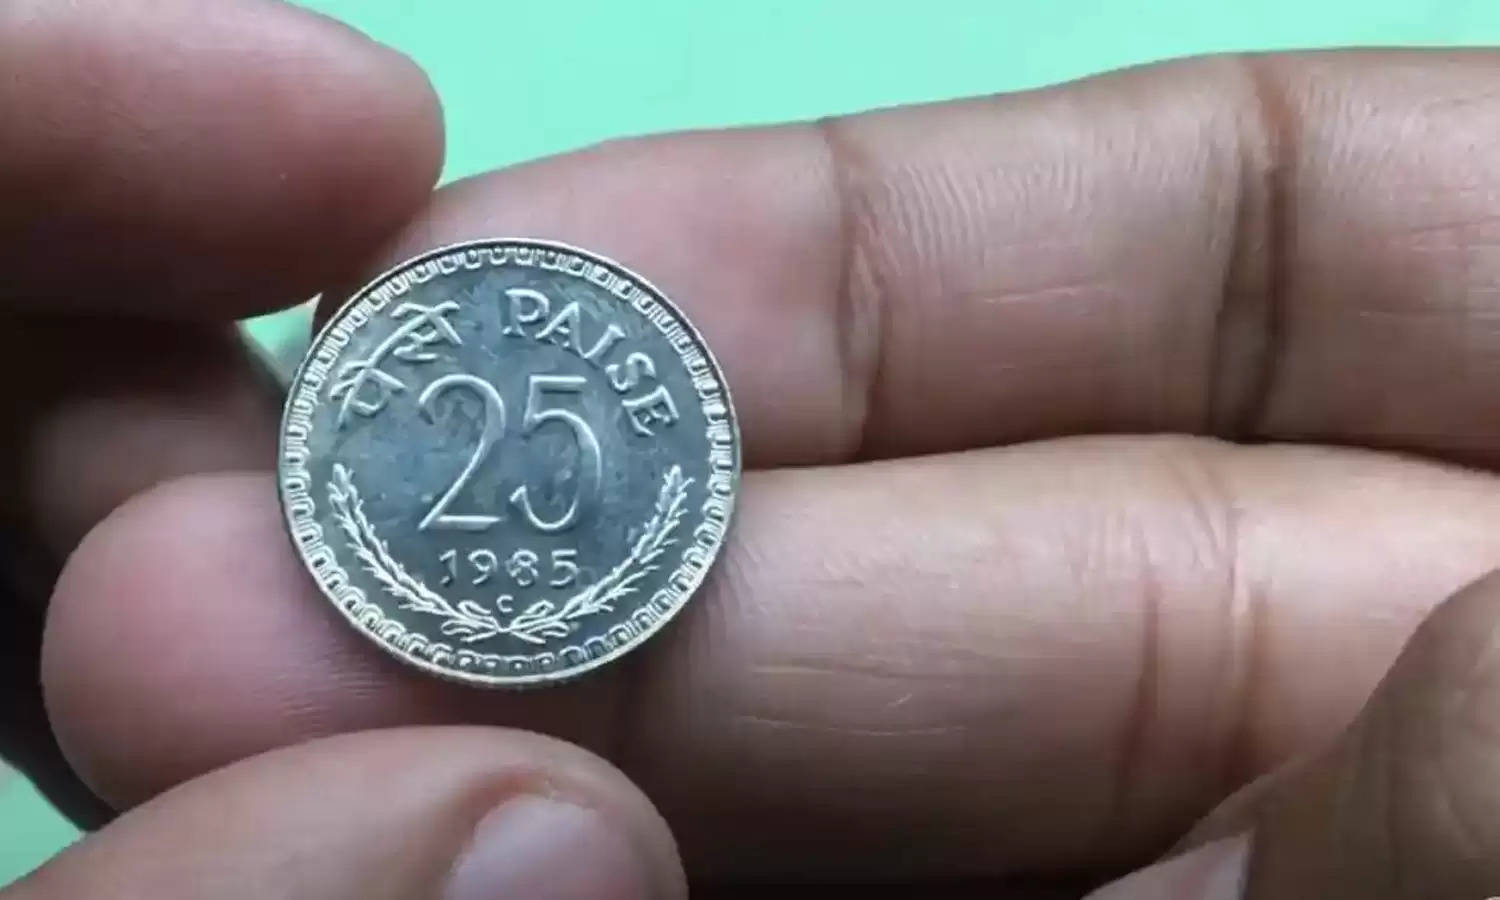 Rare Coin: गुल्लक से लेकर अलमारी तक जल्दी तलाश लीजिये ये किस्मत खोलने वाला सिक्का! जानिए क्या है ऑफर